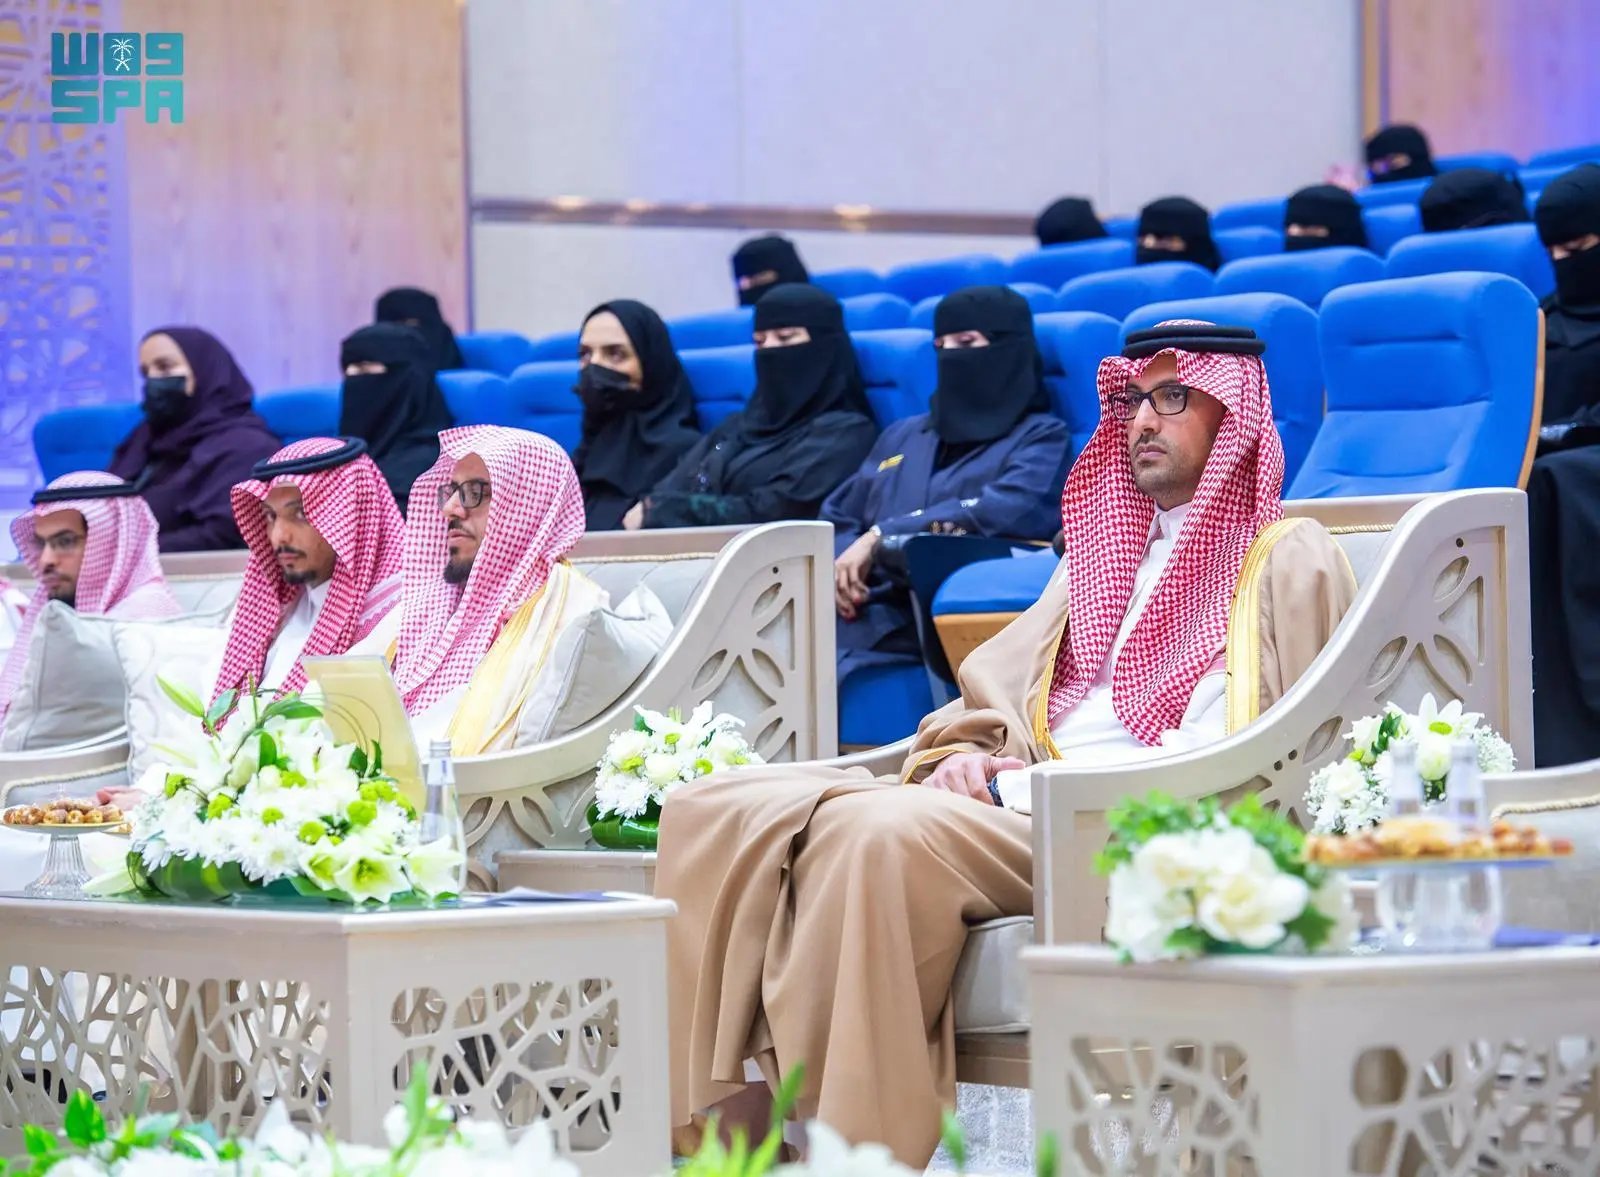 الأمير سعود بن خالد بن فيصل يرعى ملتقى “التميز الرياضي” في المدينة المنورة